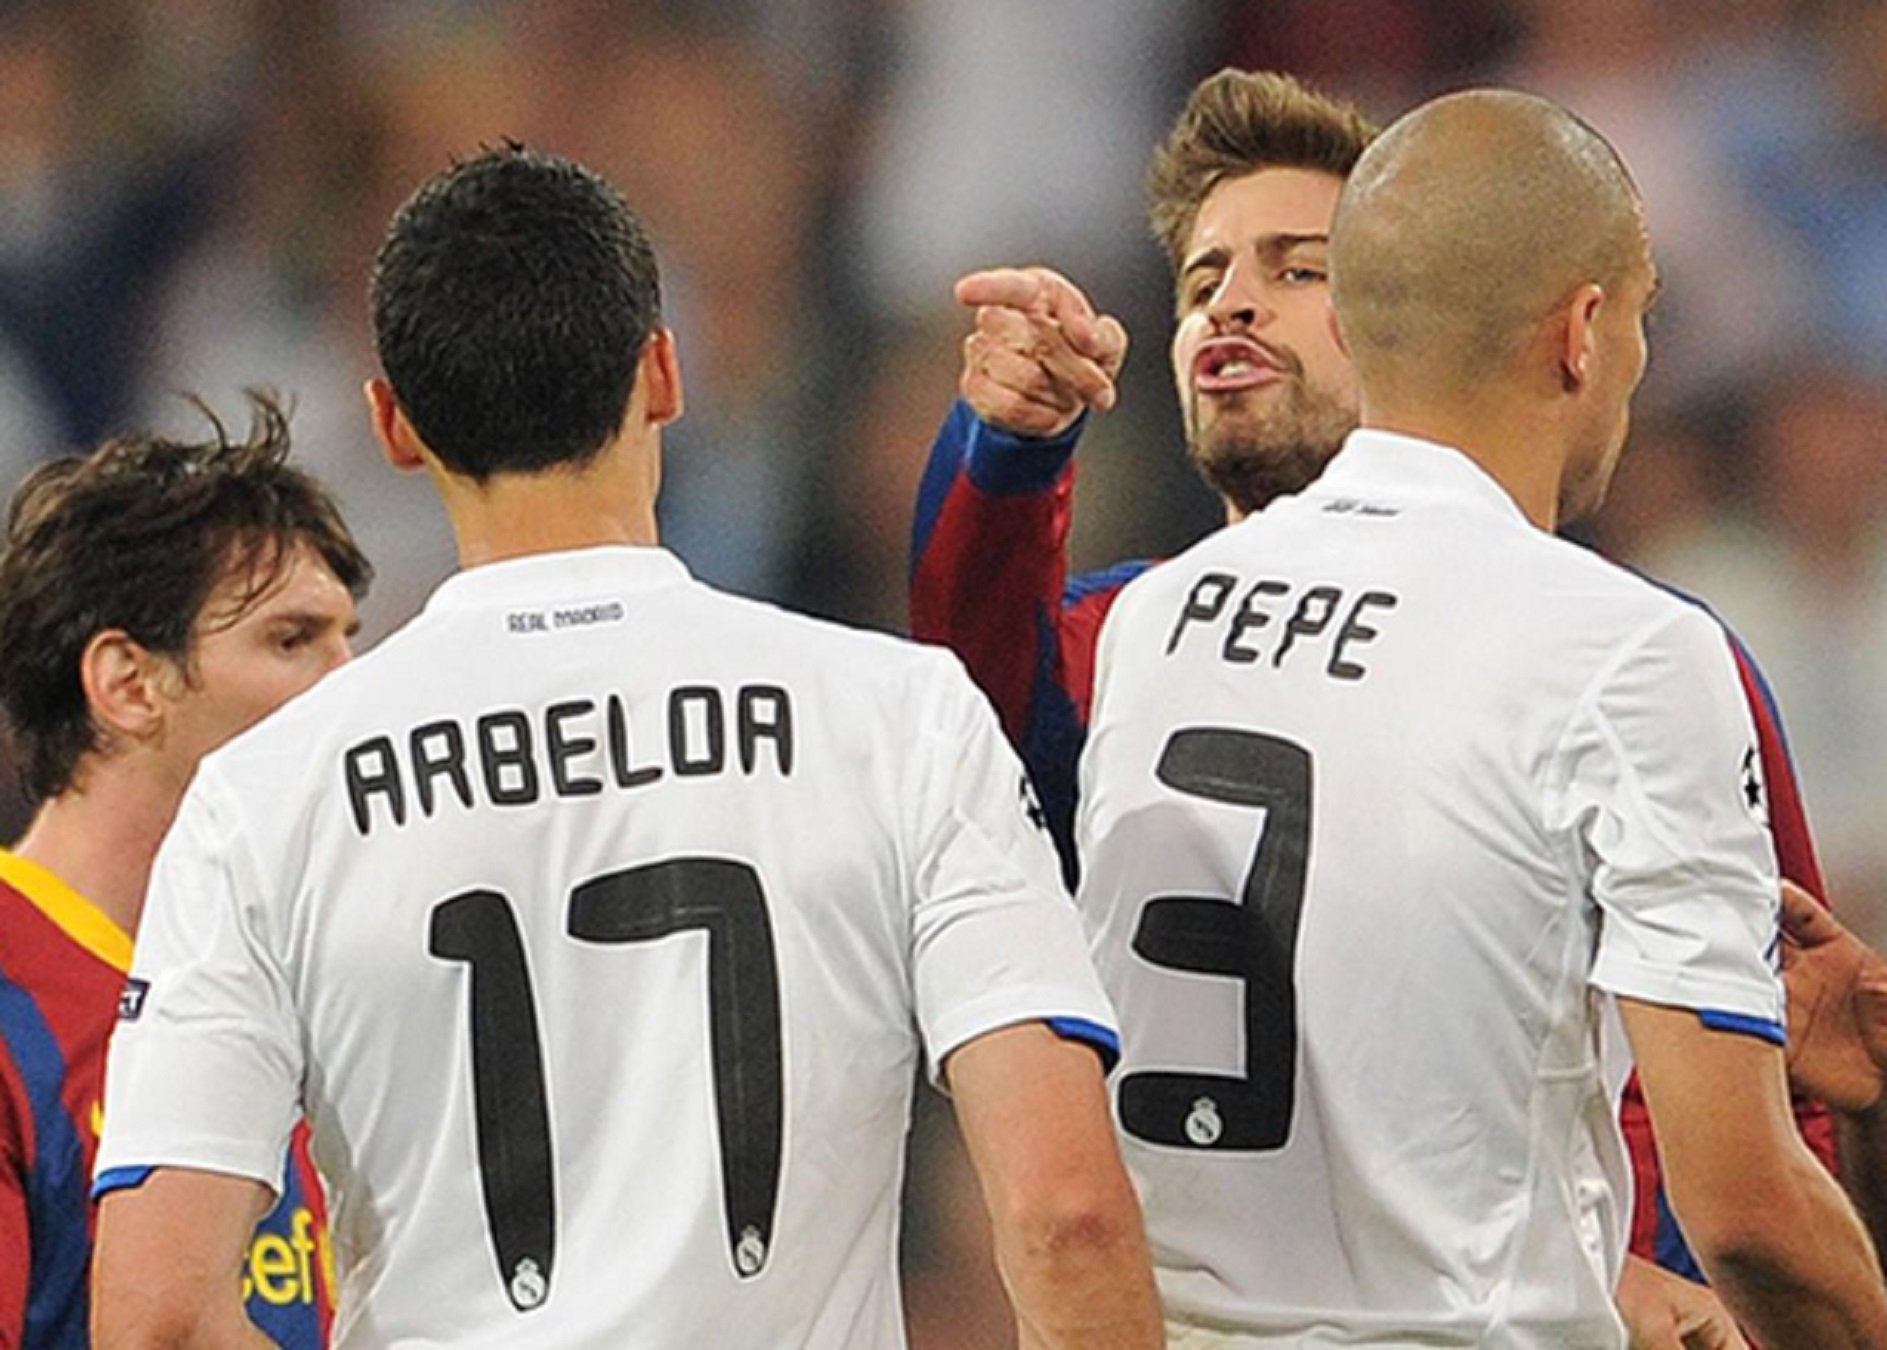 Arbeloa, el "cono-cido" de Piqué, humillado por la red tras lo que ha dicho de Messi